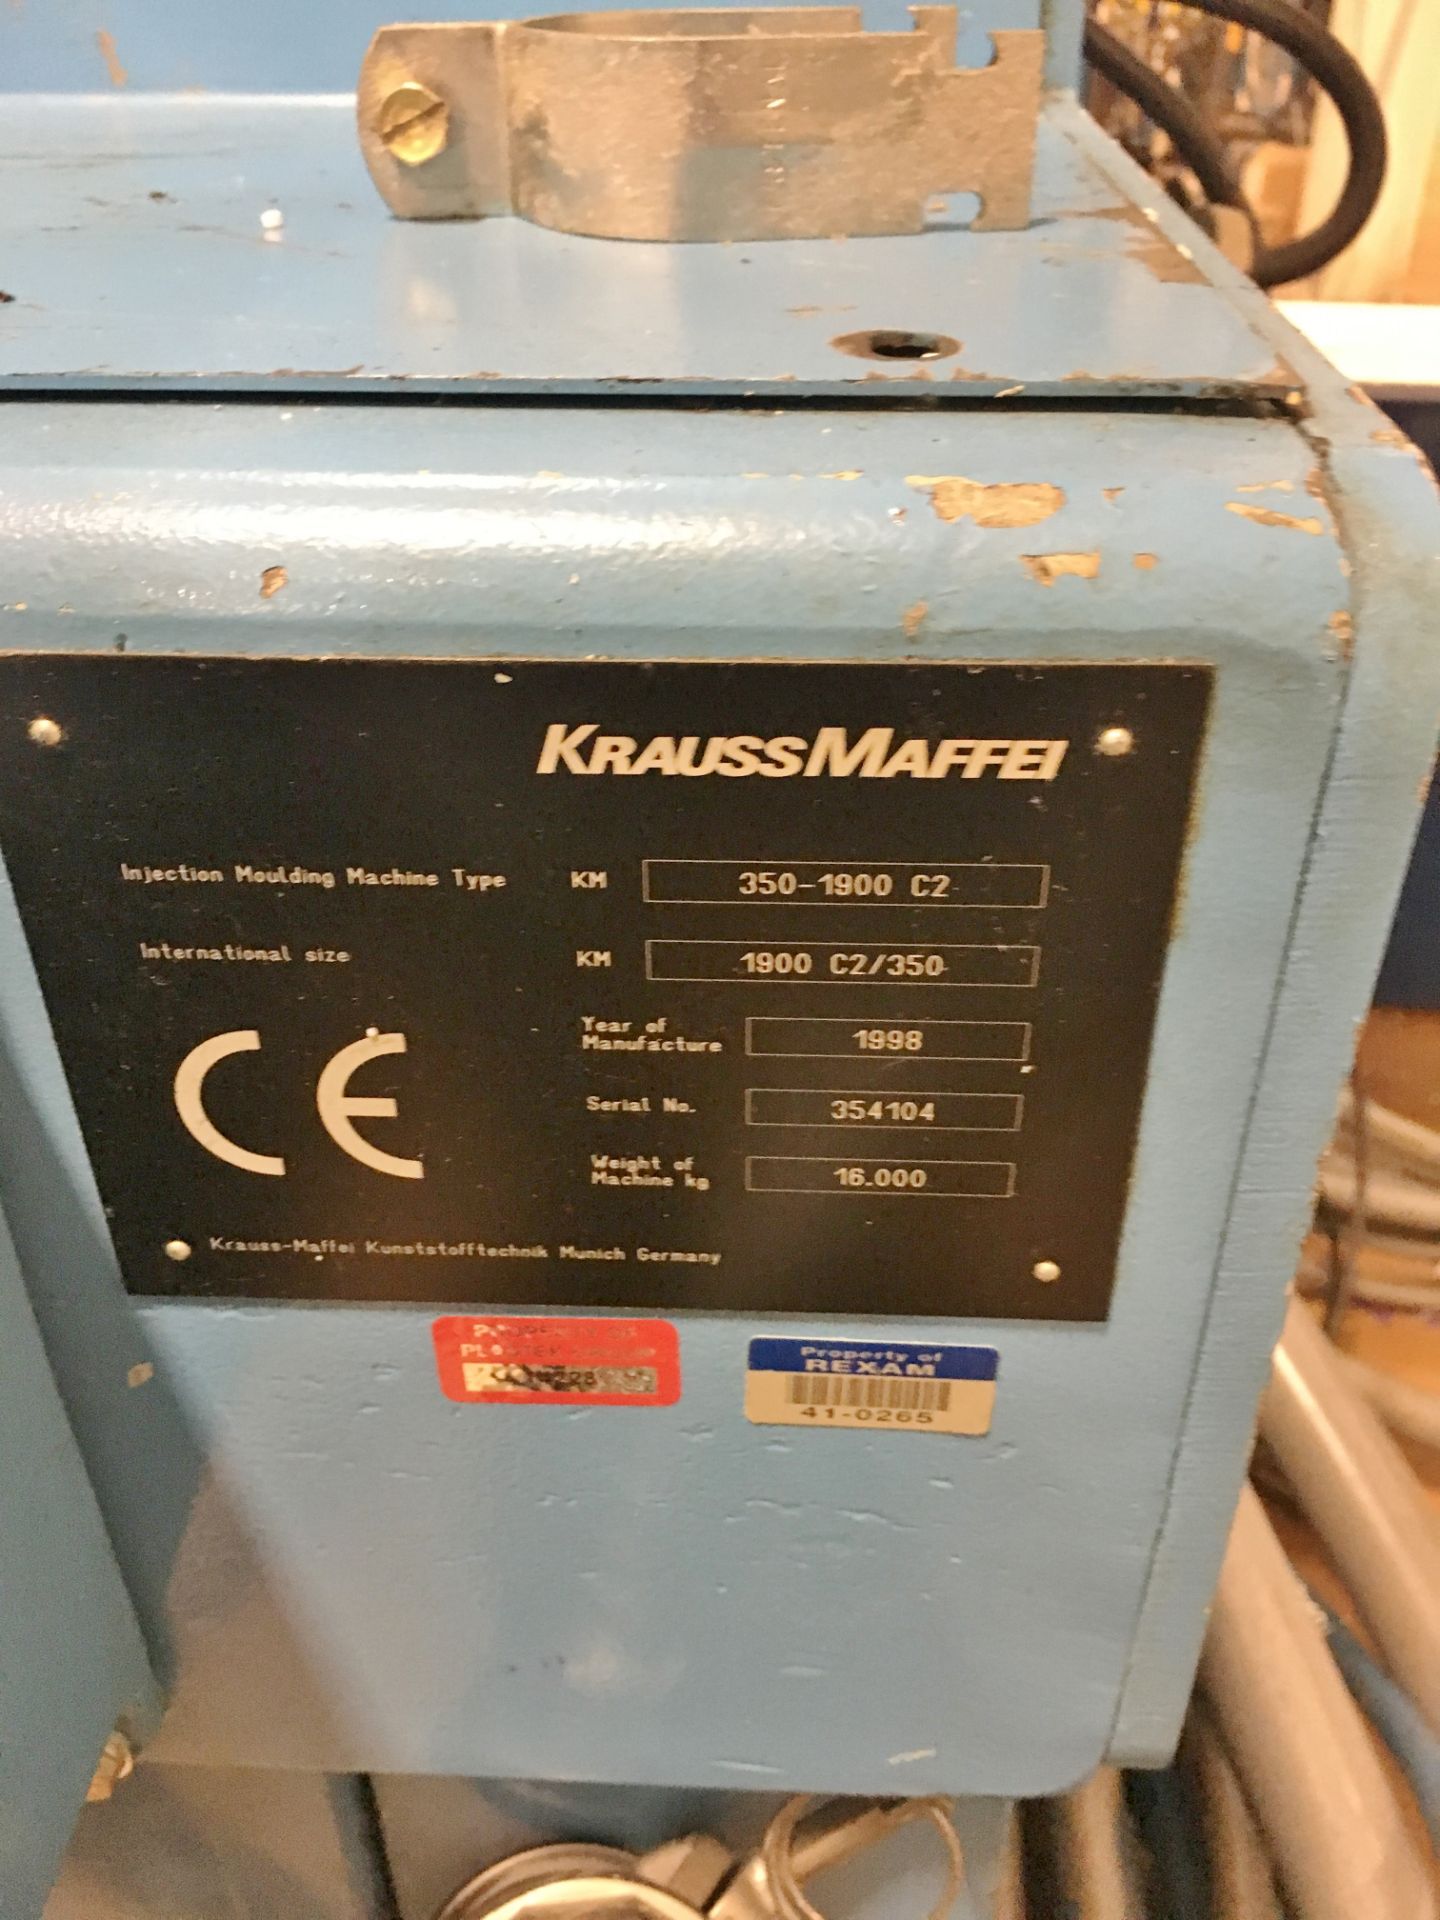 Krauss Maffei 350-1900 C2 Injection Molding Machine 1998 - Image 3 of 3